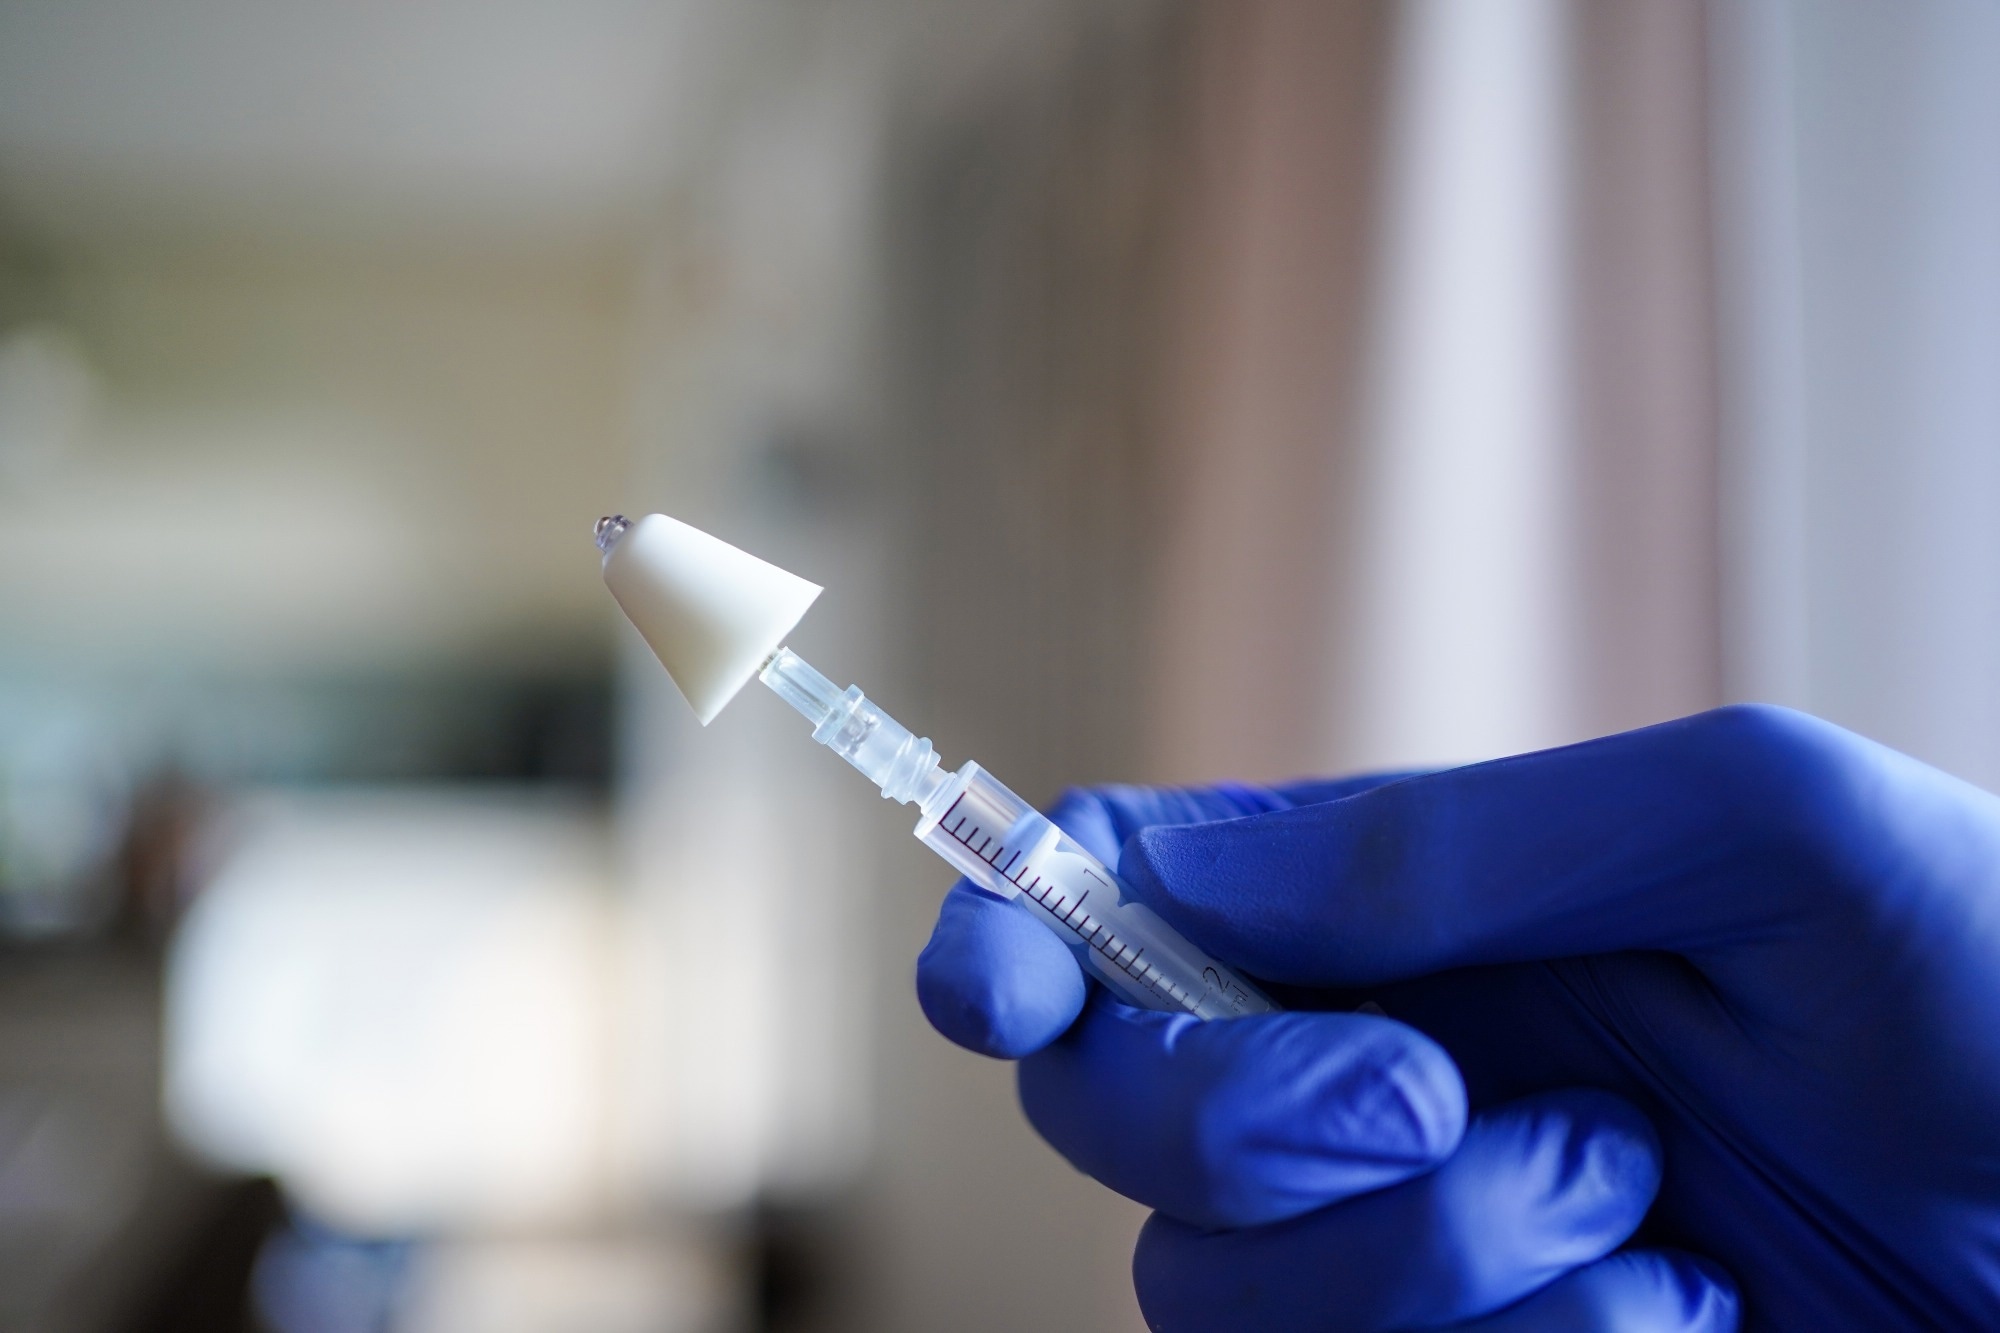 Donosowa szczepionka przeciwko COVID-19 obiecująca jest w łagodzeniu ciężkich objawów